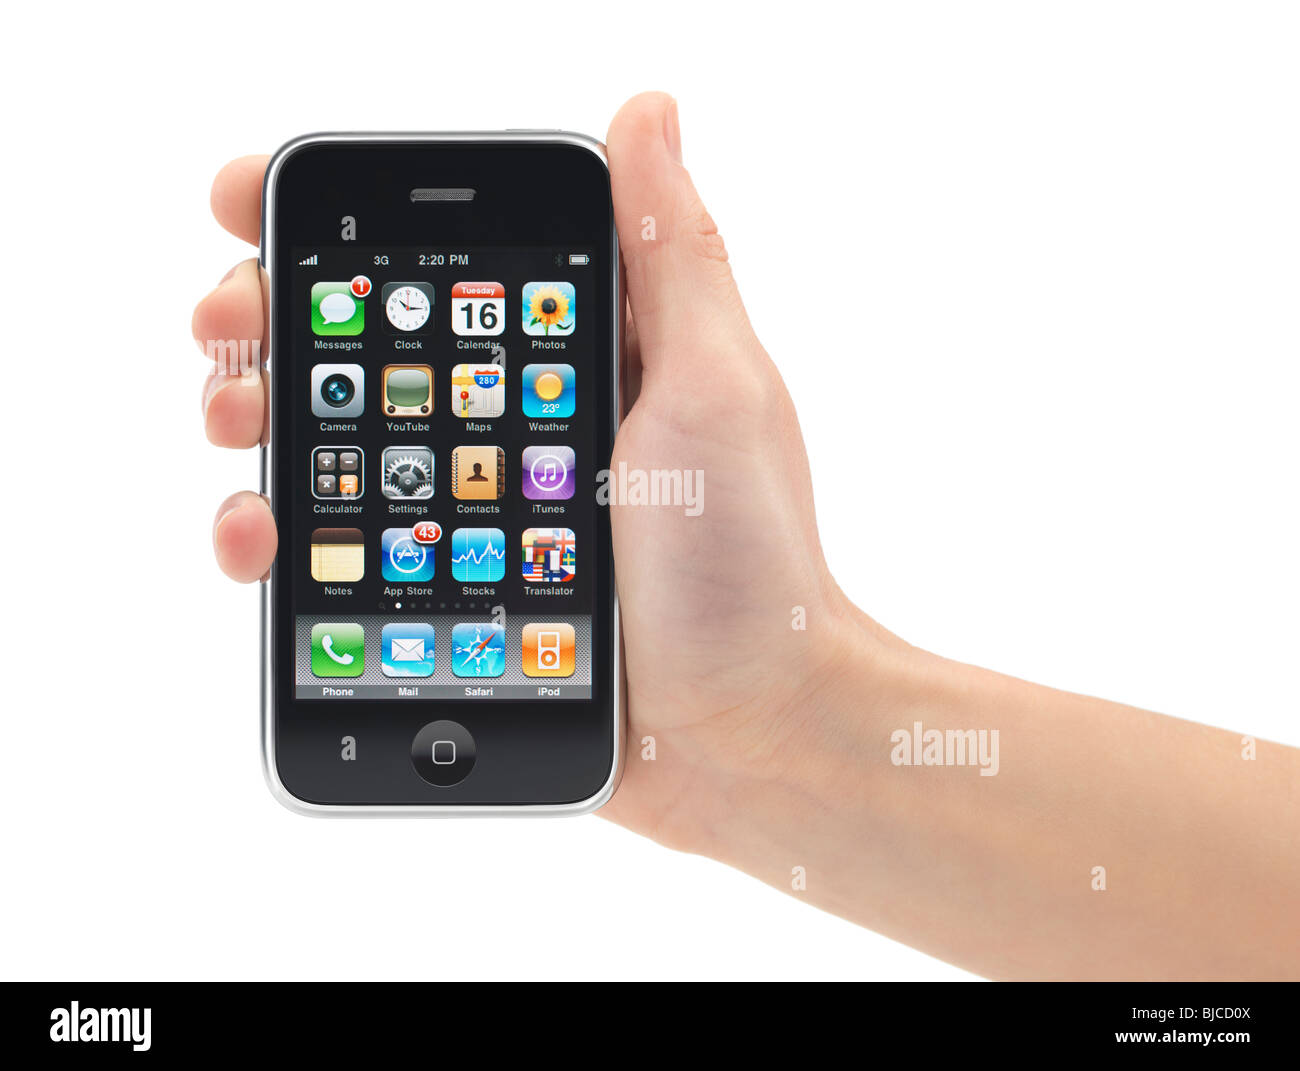 iPhone 3Gs trong tay trên nền trắng mang đến cho người xem một vẻ đẹp tinh tế và sang trọng. Chiếc điện thoại này được trang bị những tính năng tuyệt vời, đem lại trải nghiệm hoàn hảo cho người dùng. Hãy cùng xem hình ảnh về chiếc iPhone 3Gs này để khám phá sự độc đáo của nó. 